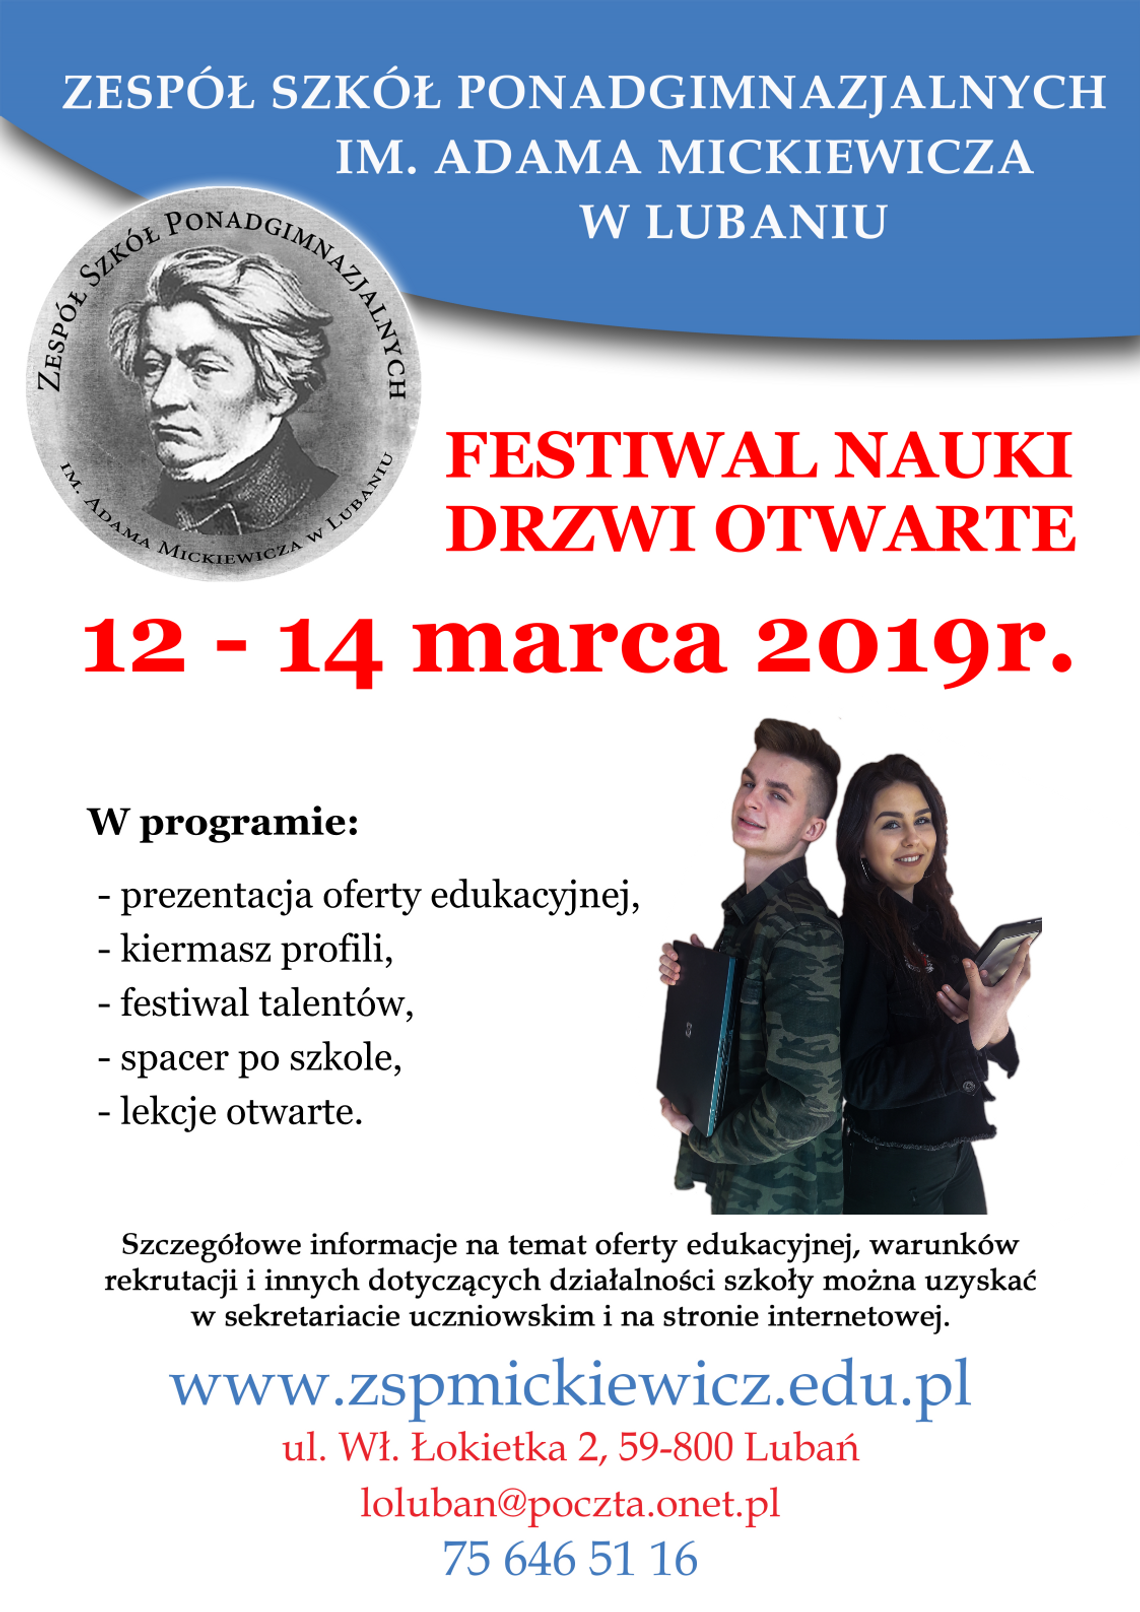 Festiwal Nauki. Drzwi otwarte w ZSP im. A. Mickiewicza